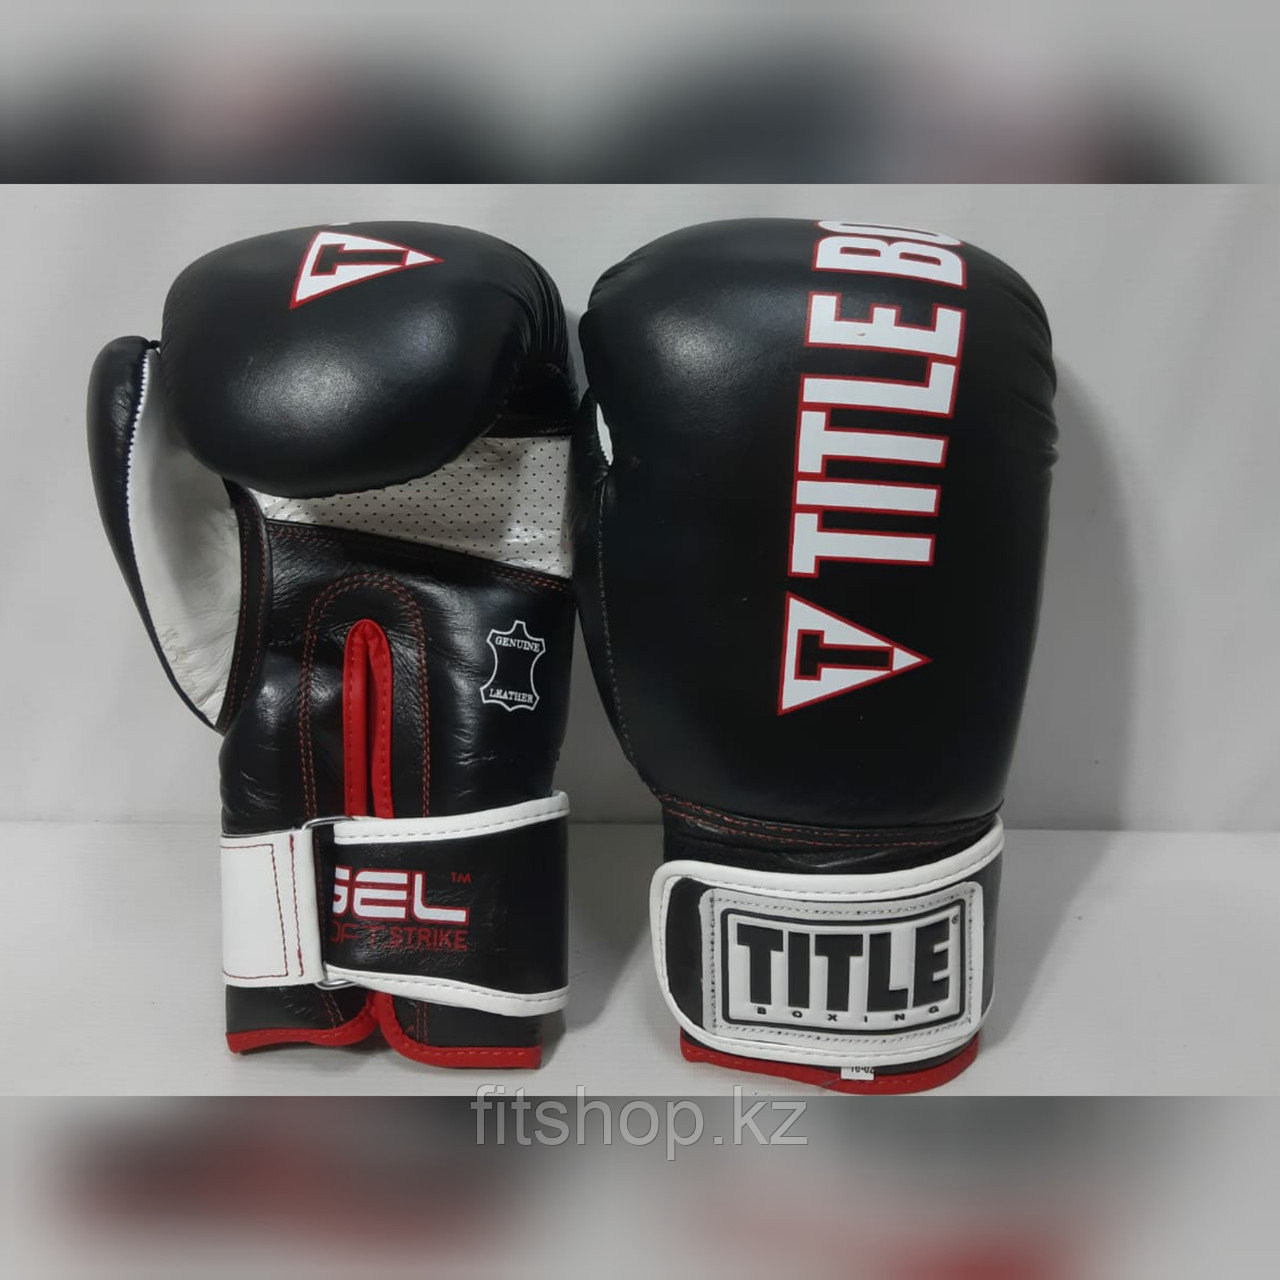 Боксерские перчатки TITLE ( натуральная кожа )